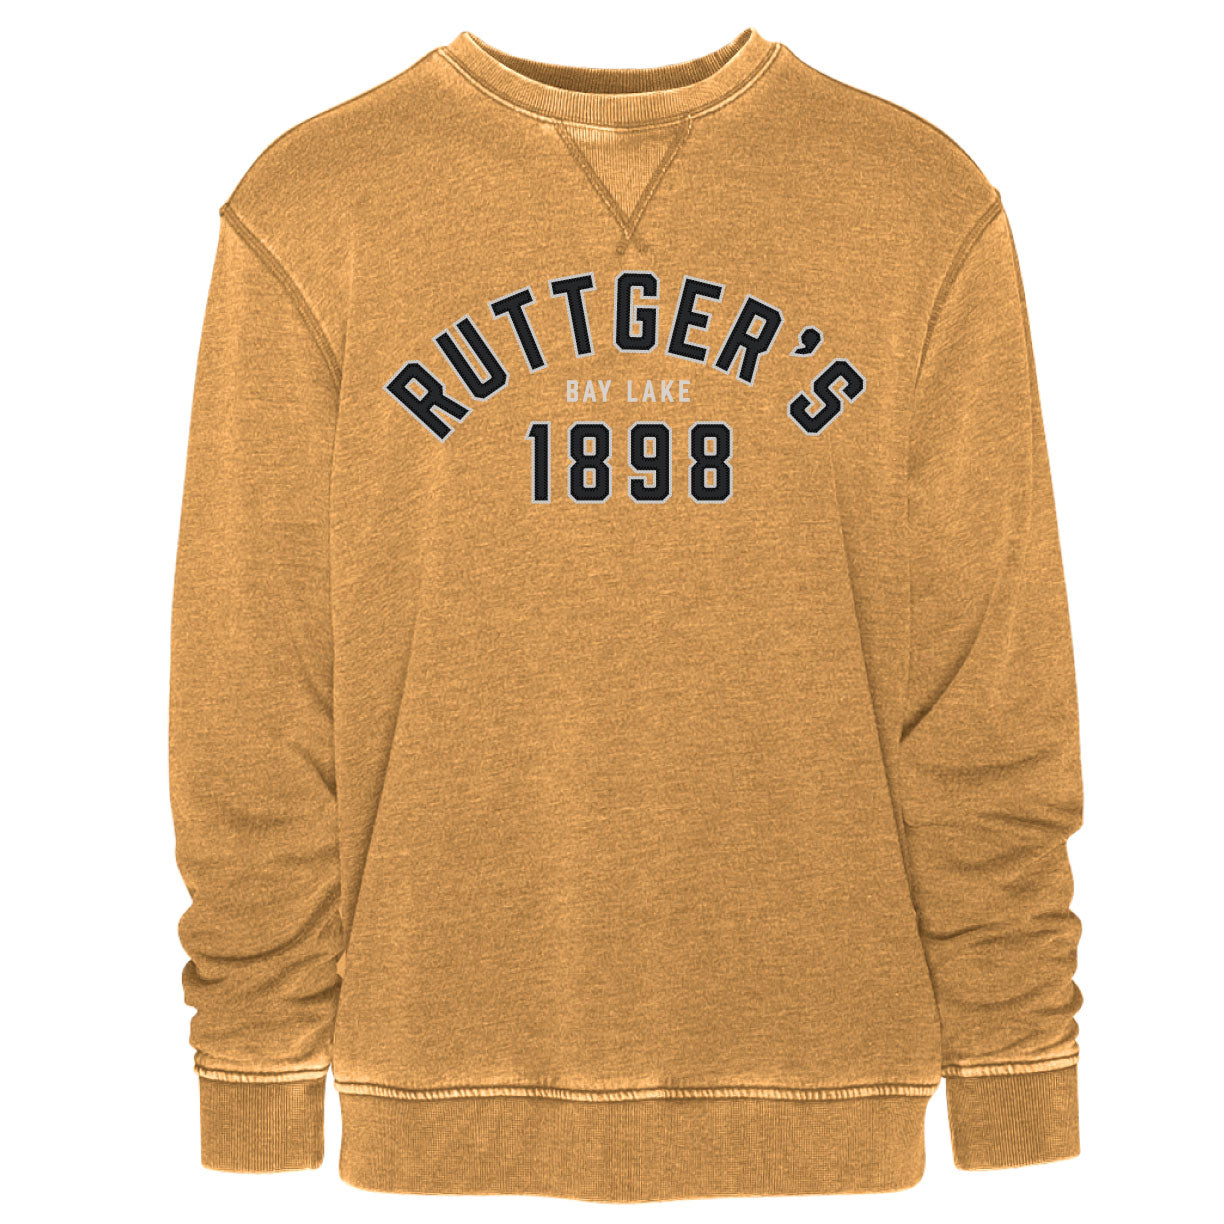 Ruttger's Vintage Crew - Vintage Faded Gold